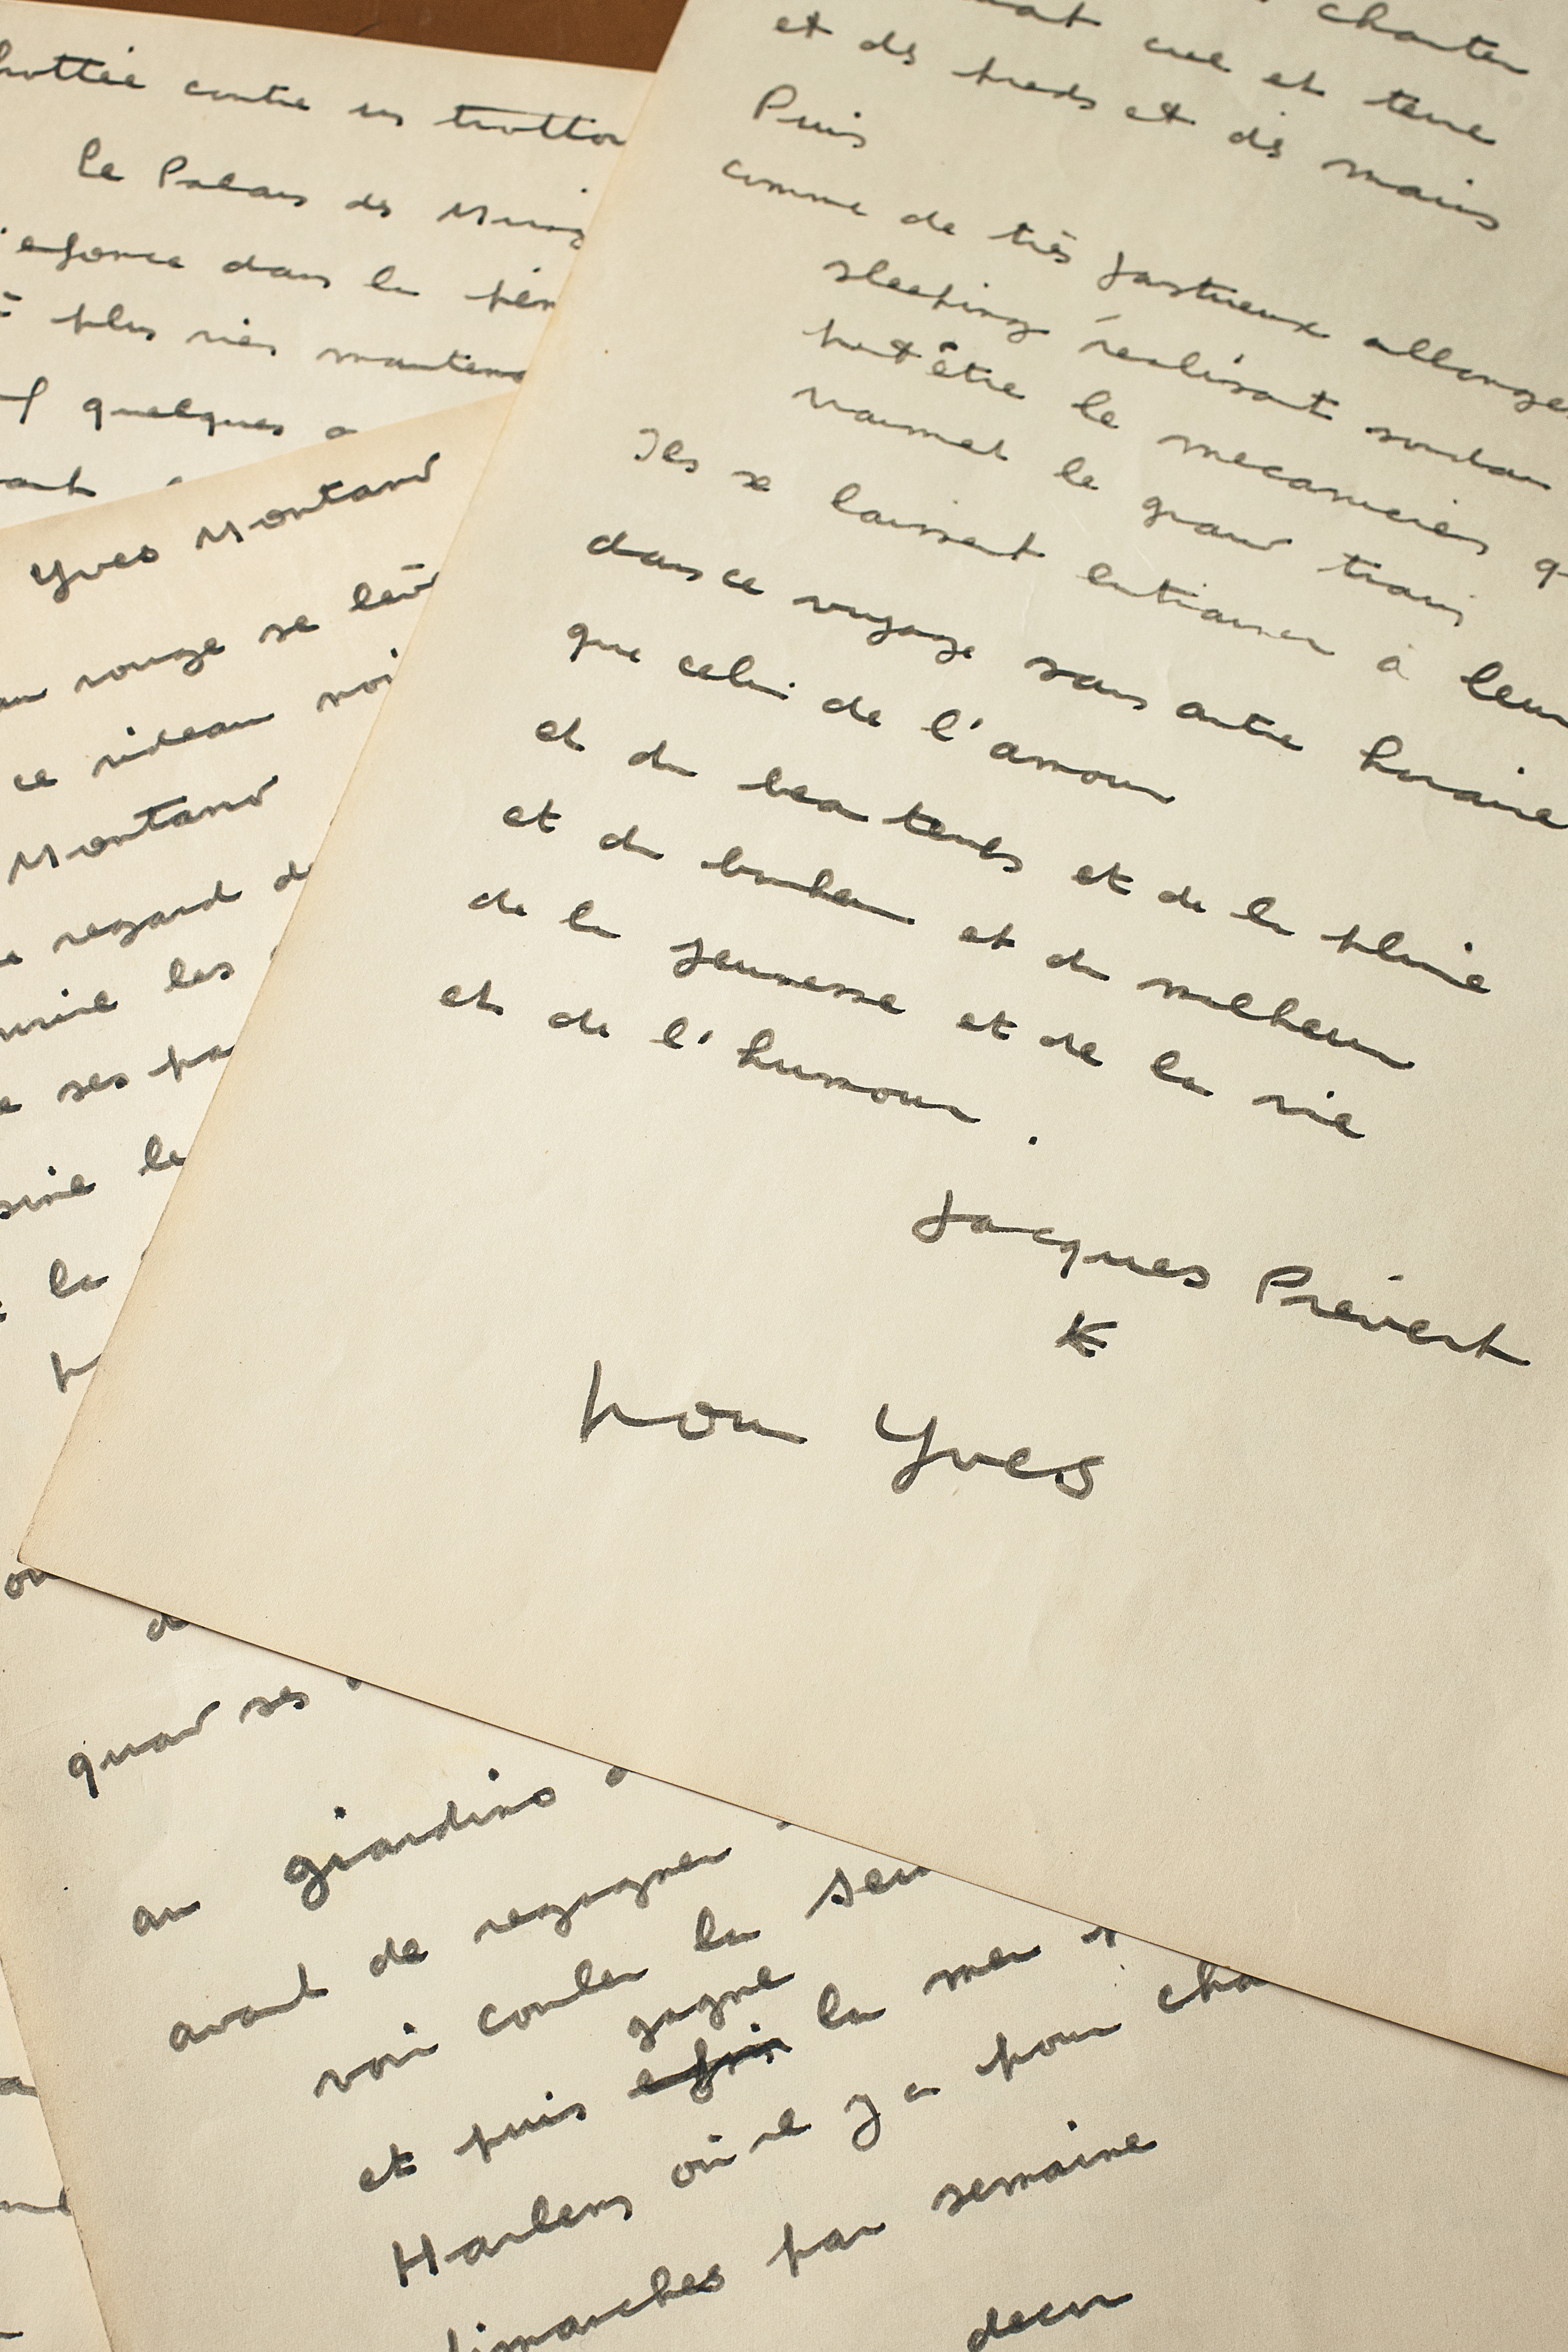 texte manuscrit signé de la main de Jacques PREVERT 